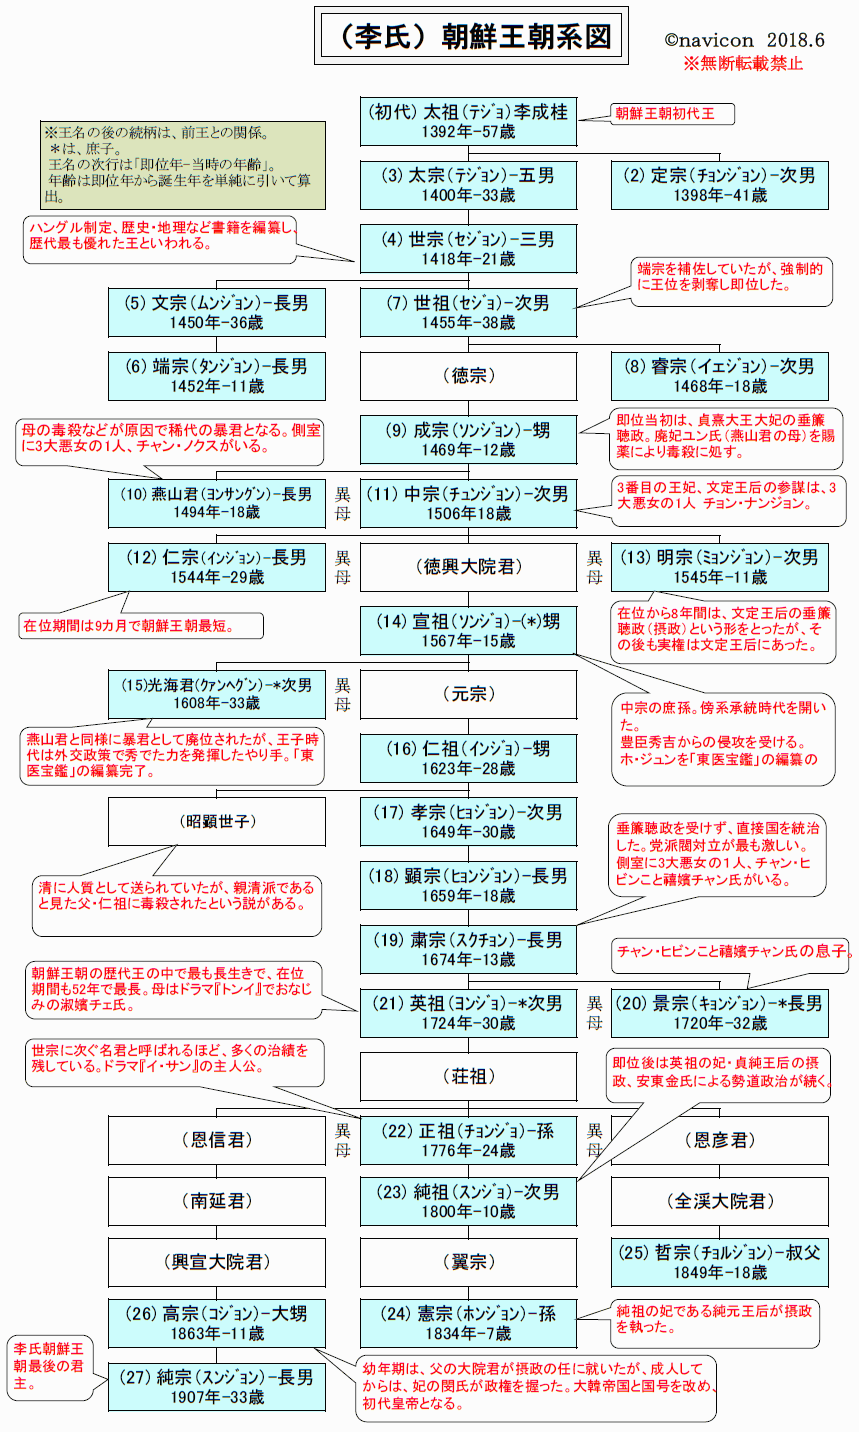 朝鮮王朝系図 ナビコン